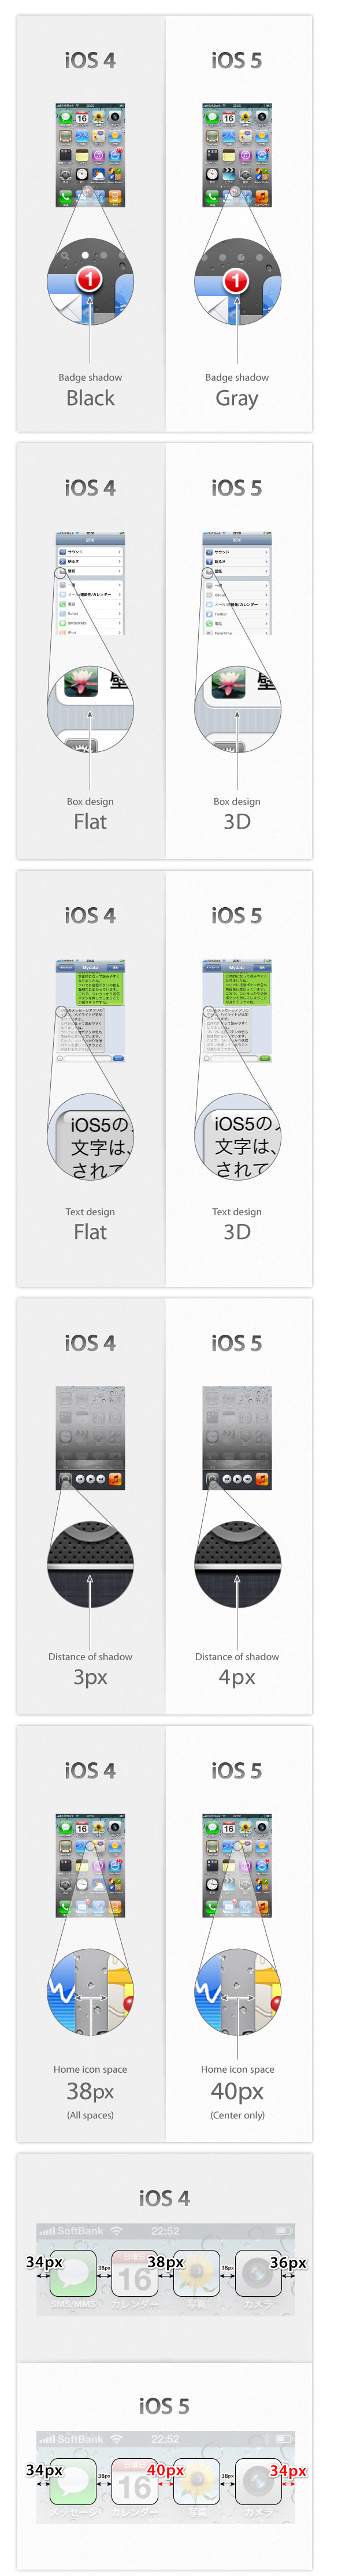 ios 4 51 Les différences entre iOS 4 et iOS5, ou lamour du travail bien fait !